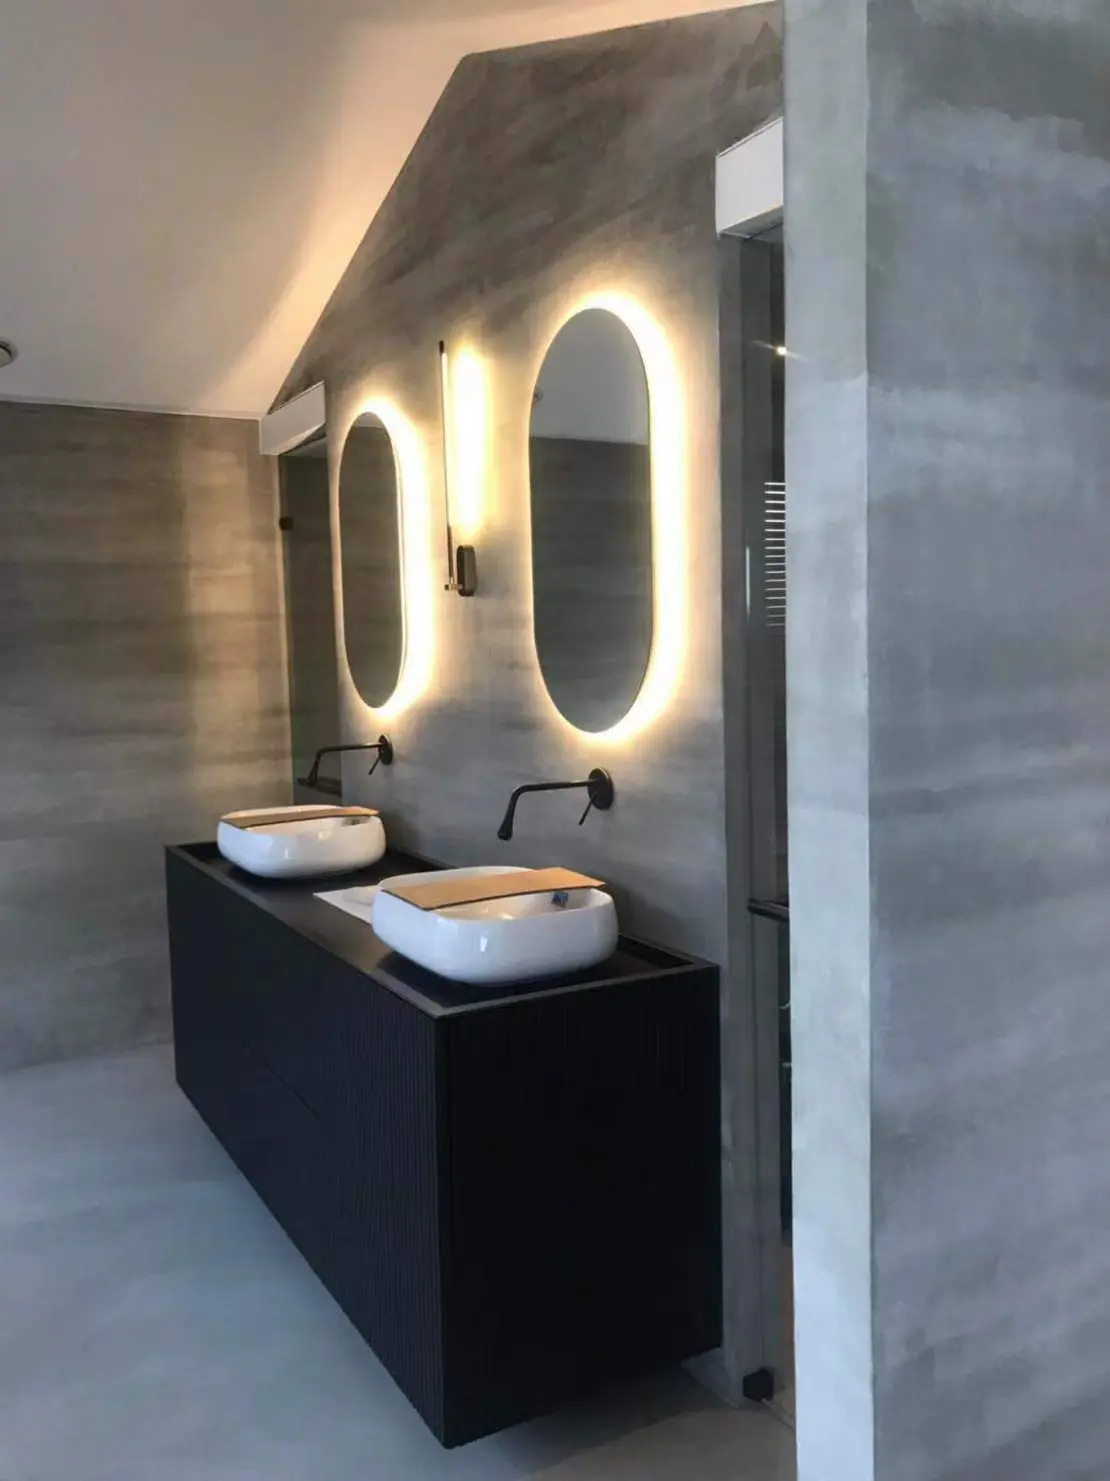 Microcemento sul pavimento e sulle pareti di un bagno minimalista decorato con rubinetti neri